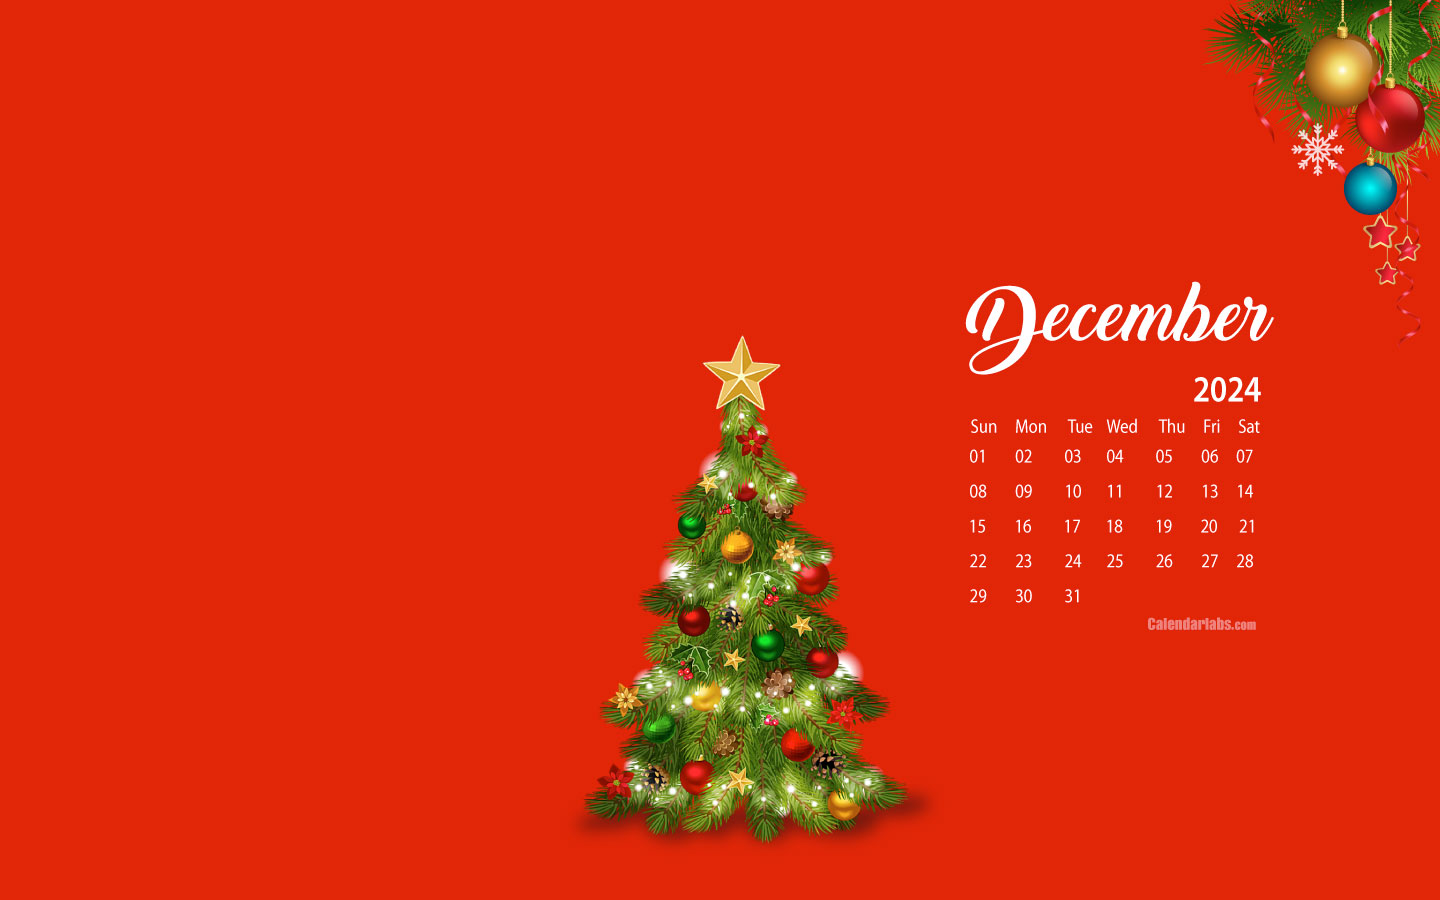 Lịch nền máy tính tháng 12/2024 của CalendarLabs sẽ giúp cho kế hoạch trở nên dễ dàng hơn bao giờ hết trong mùa Giáng sinh sôi động. Với thiết kế mới lạ, đồng thời là thông tin lịch liên quan đến ngày lễ Noel độc đáo, bạn sẽ không phải lo lắng đến các lịch trình rơi vào thời gian nghỉ lễ.